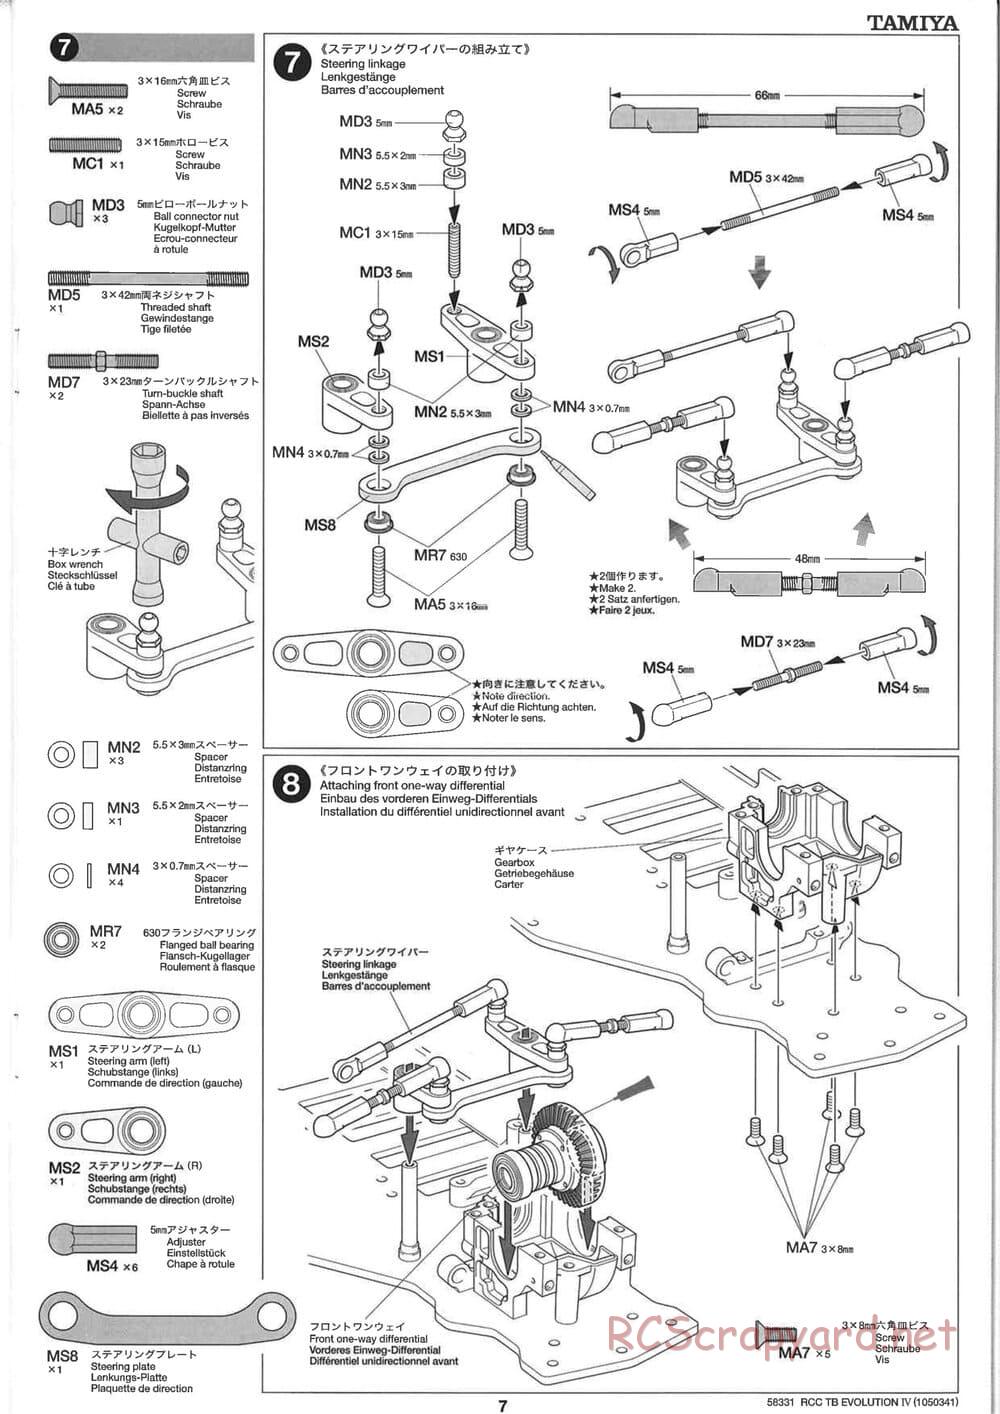 Tamiya - TB Evolution IV Chassis - Manual - Page 7